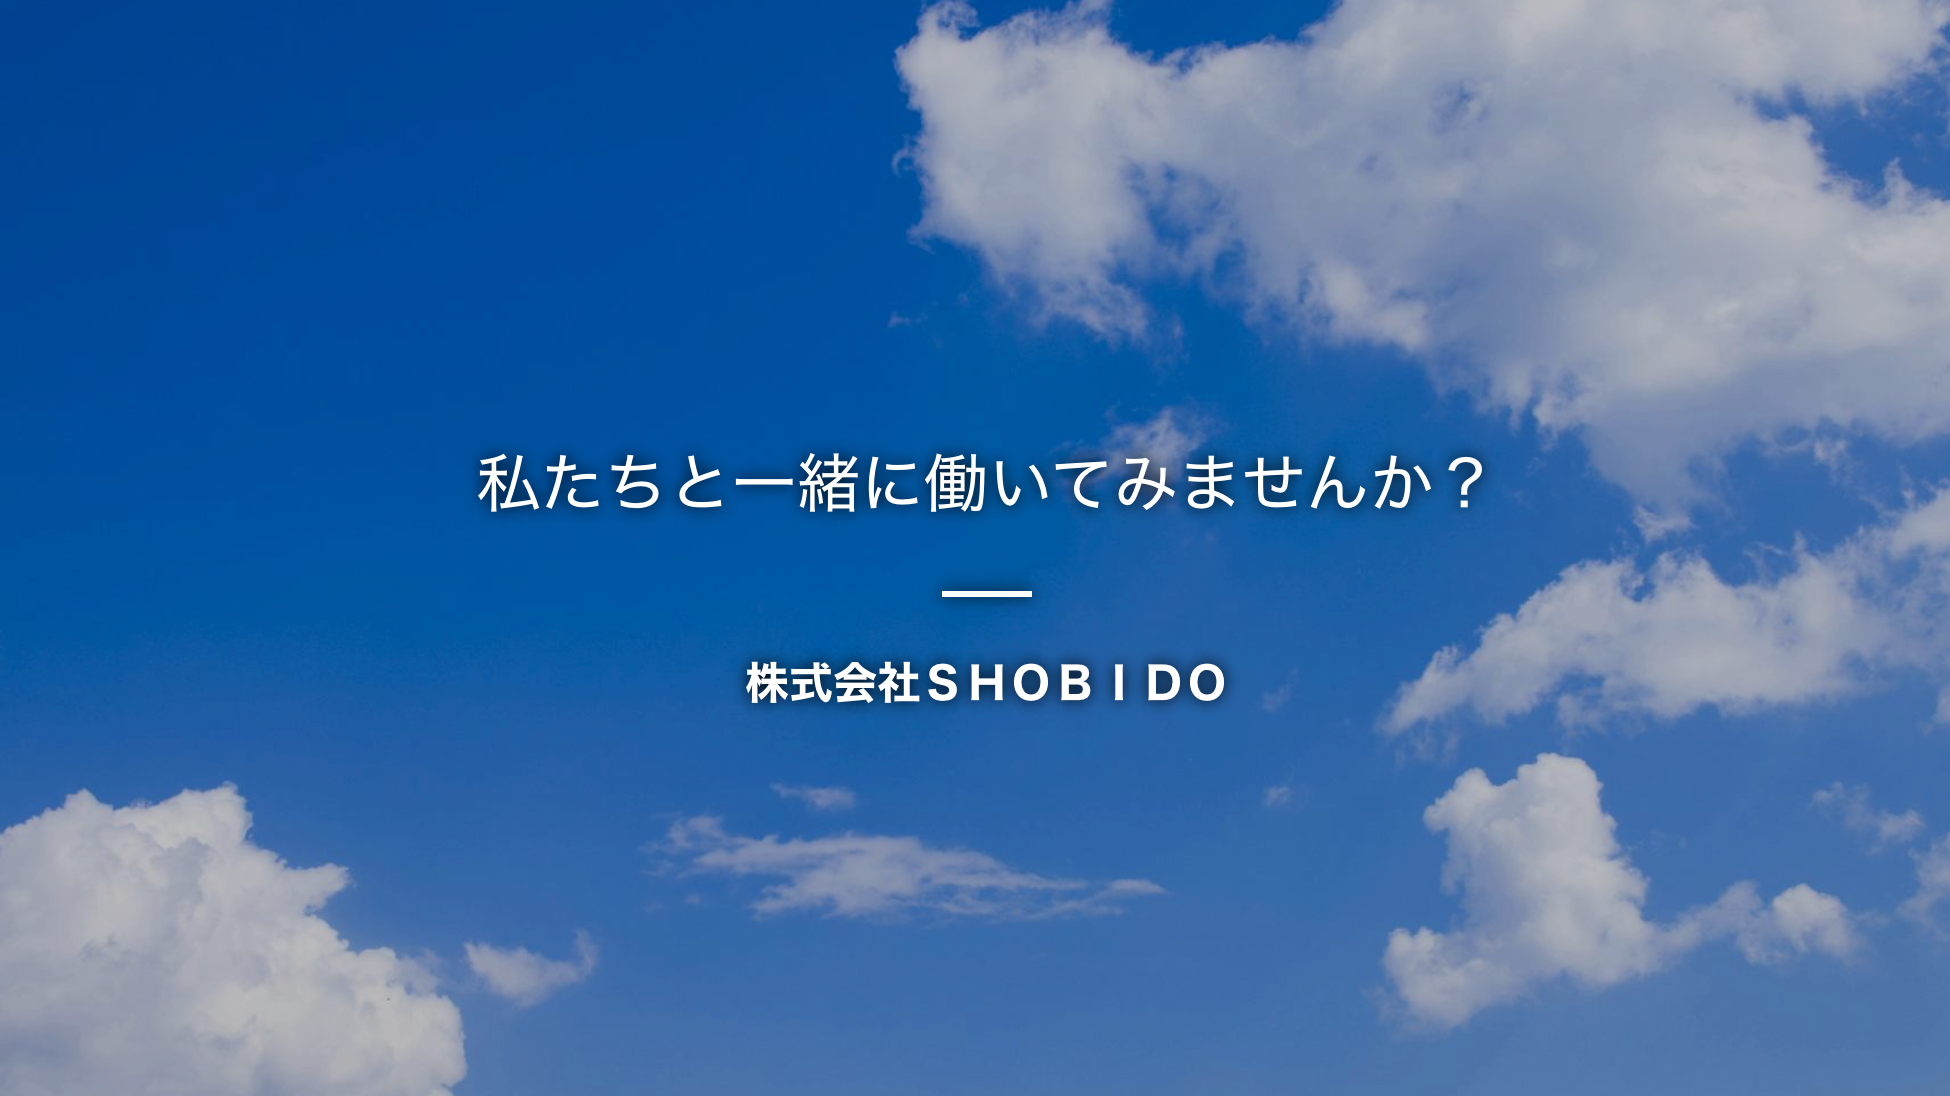 株式会社SHOBIDO